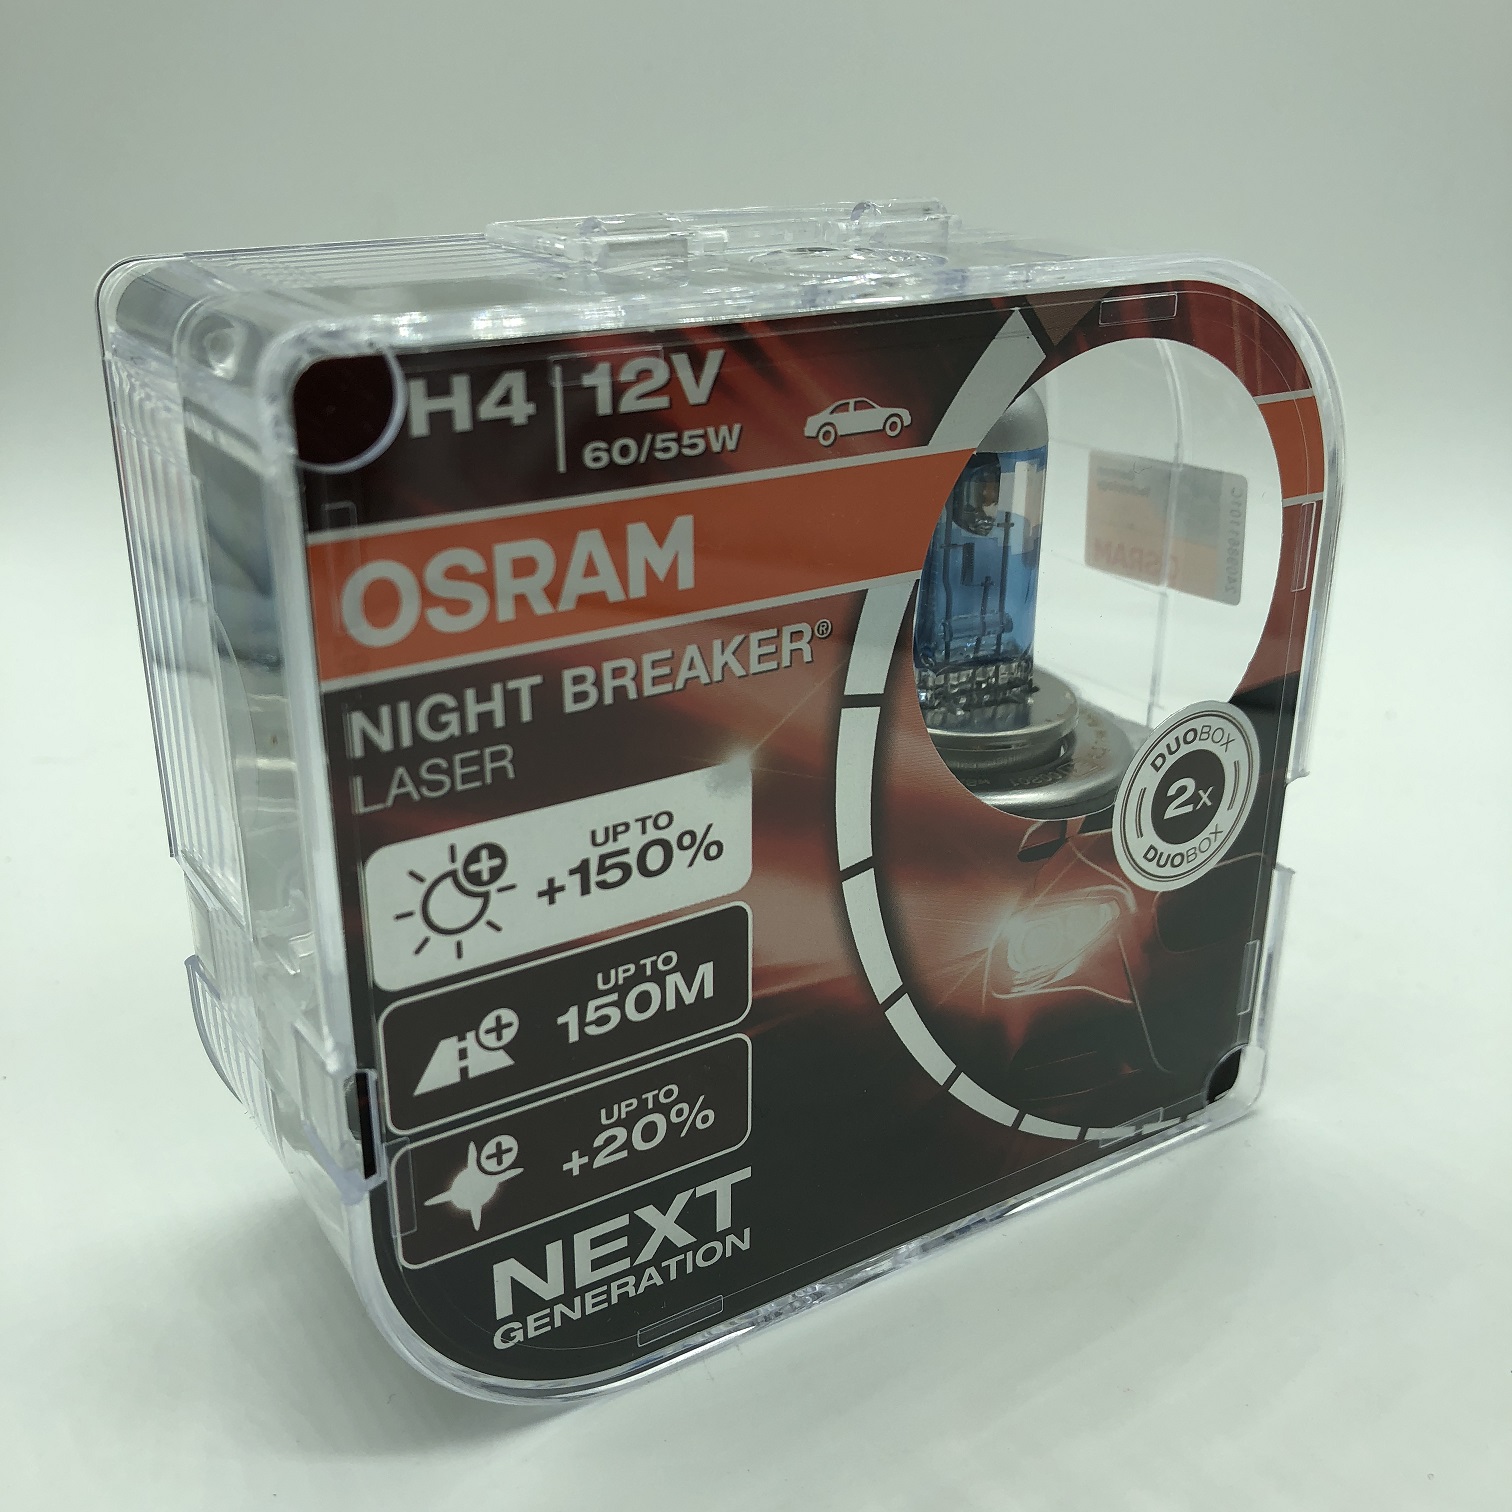 Osram Night Breacker LASER 150% mehr Licht 2er Set-Osram Night